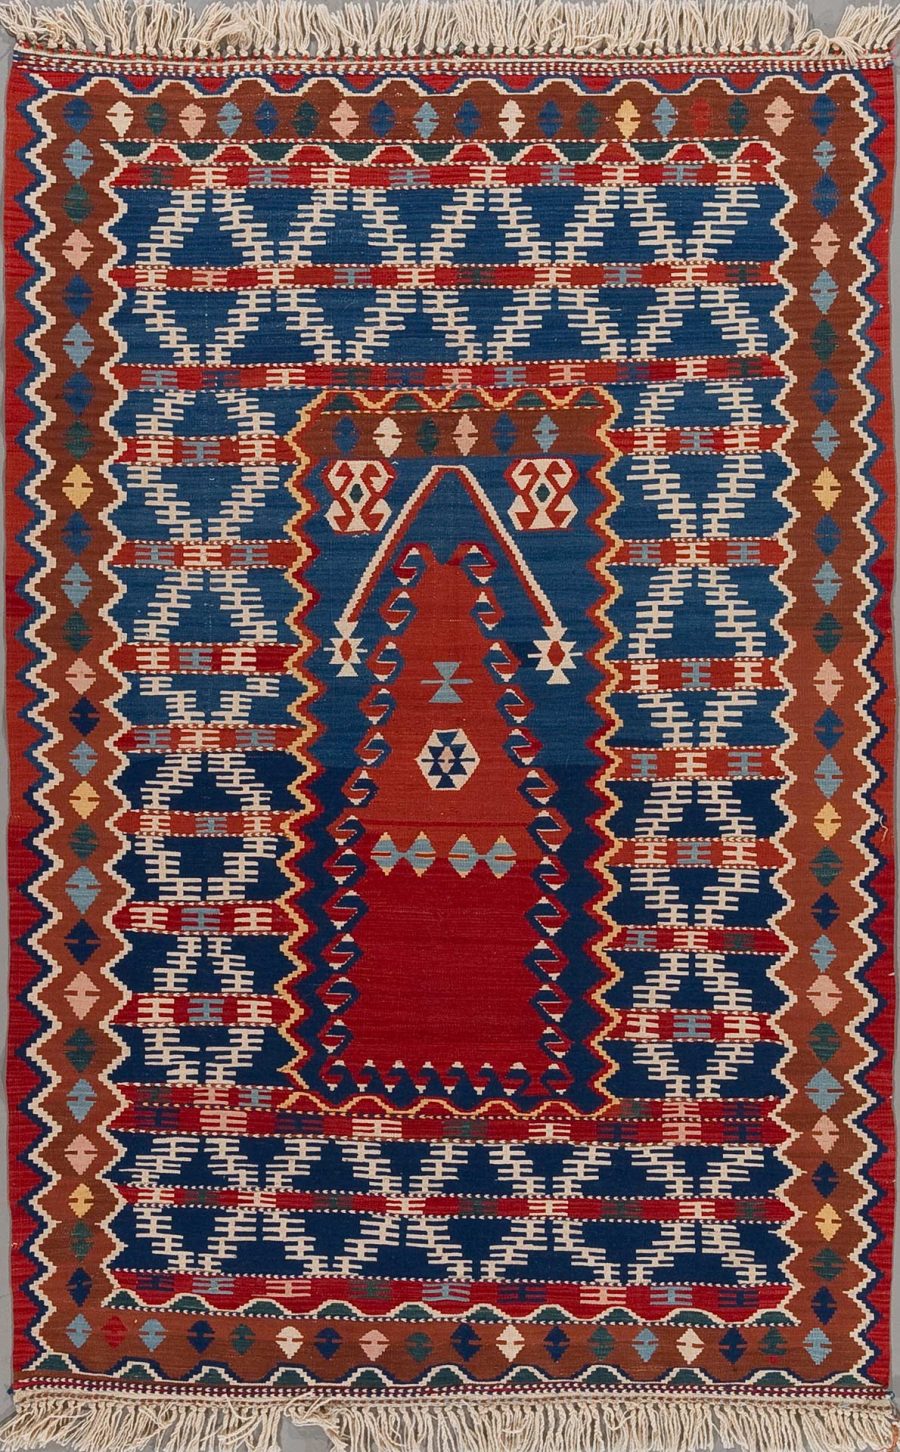 Handgeknüpfter Teppich mit detailreichen Mustern in Rot, Blau, Beige und Braun, mit Fransen an den Enden.